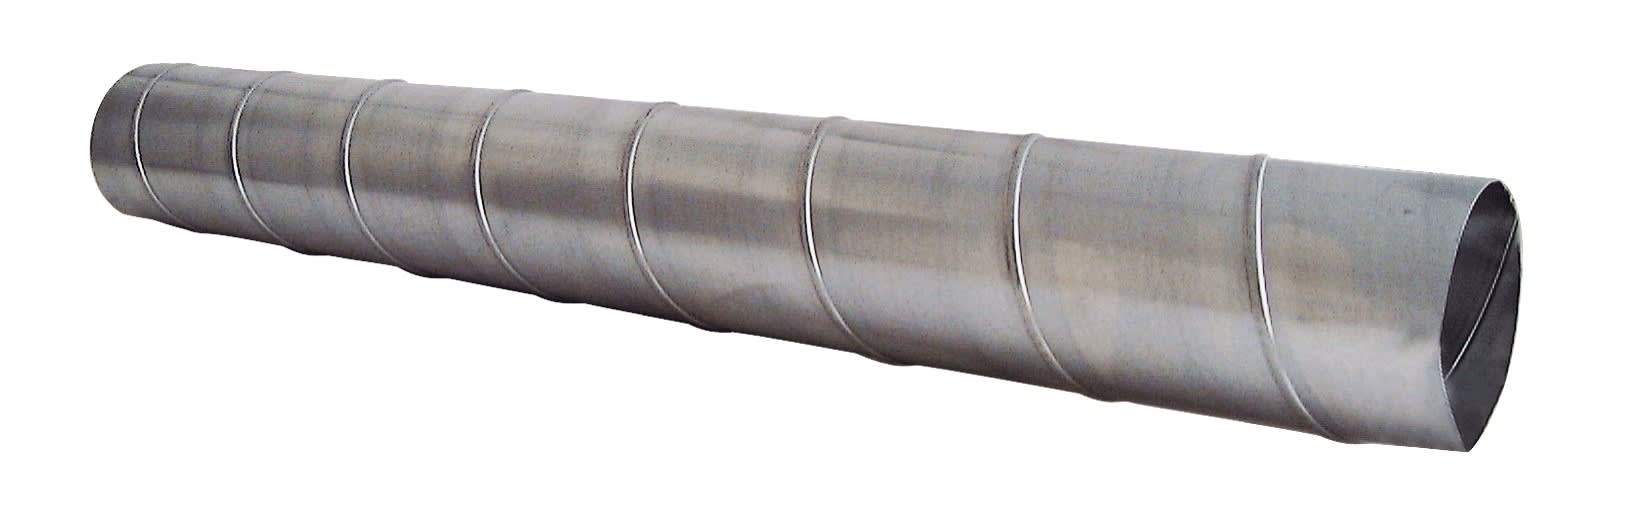 S&P - Conduit spiralé acier galvanisé, D 200 mm, longueur 2,47 m